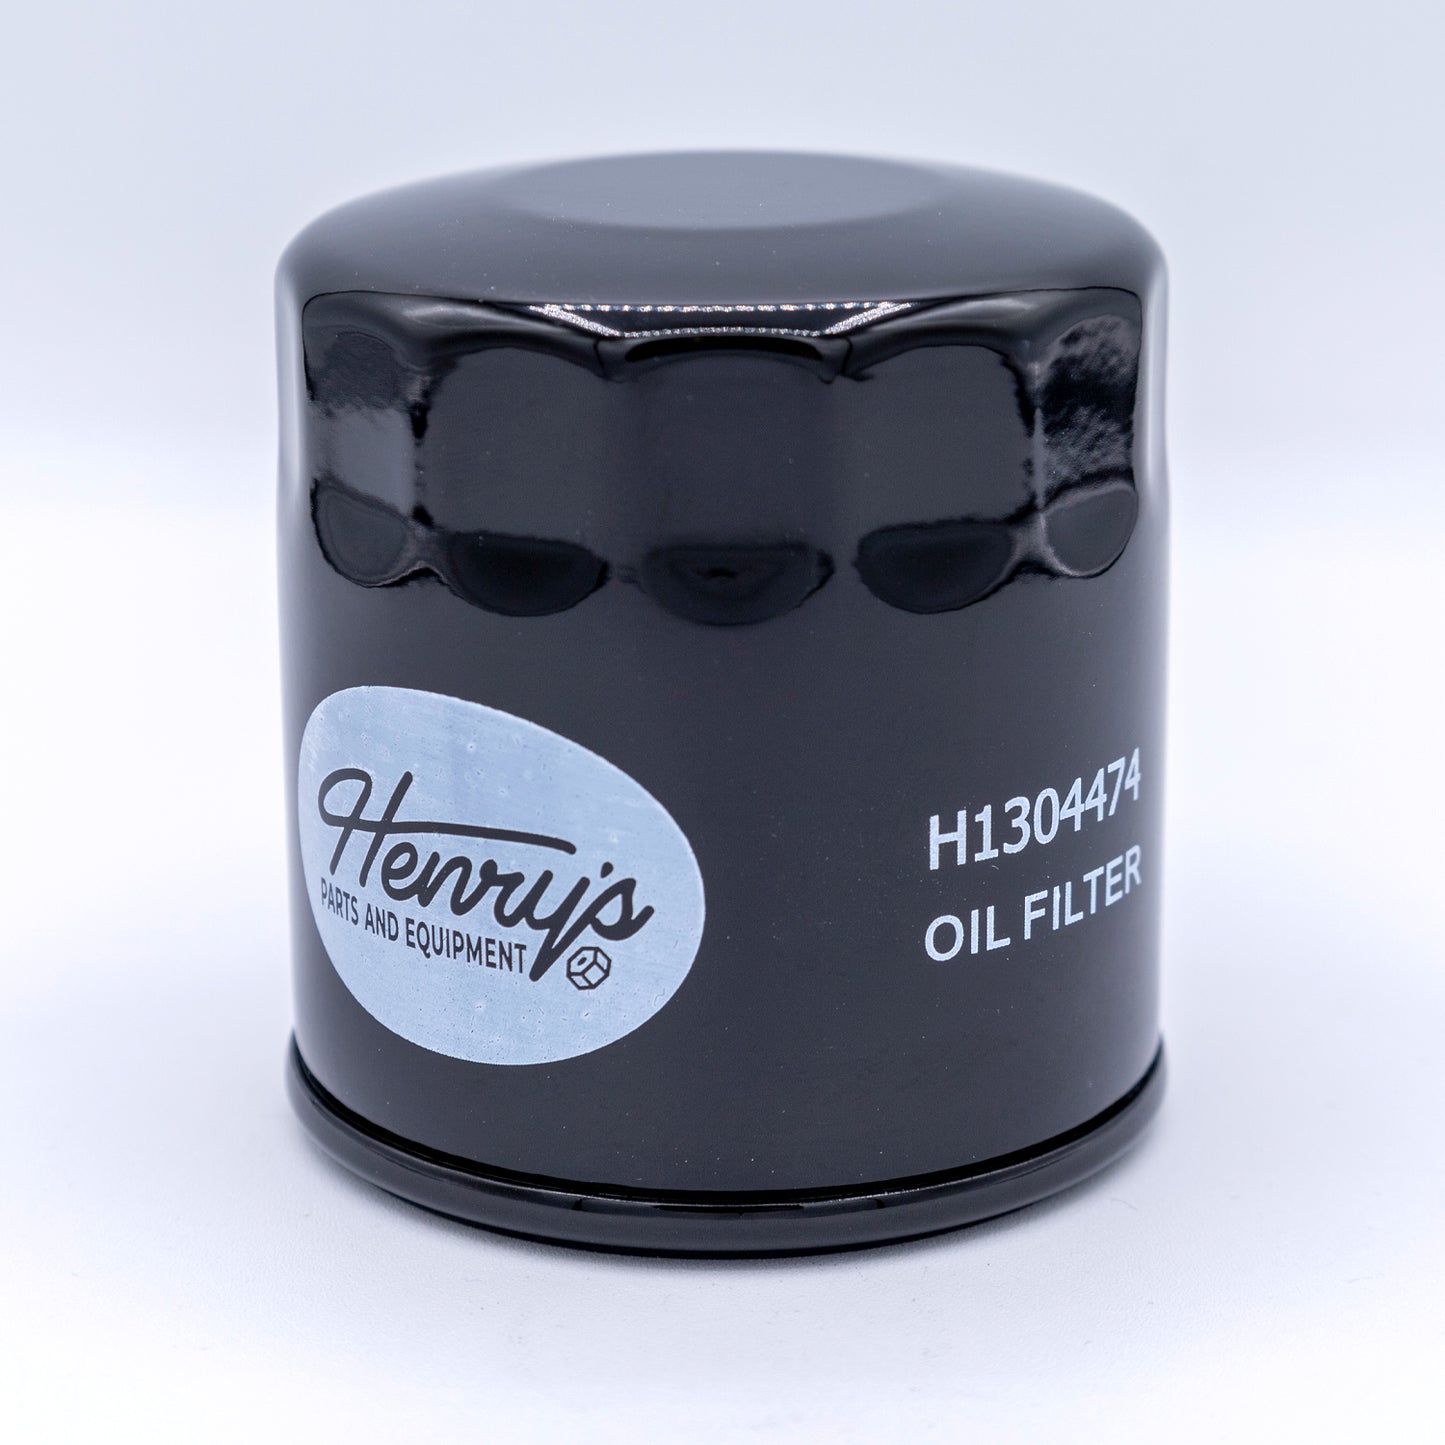 HENRY'S OIL FILTER KOHLER 20 MICRON H1304474